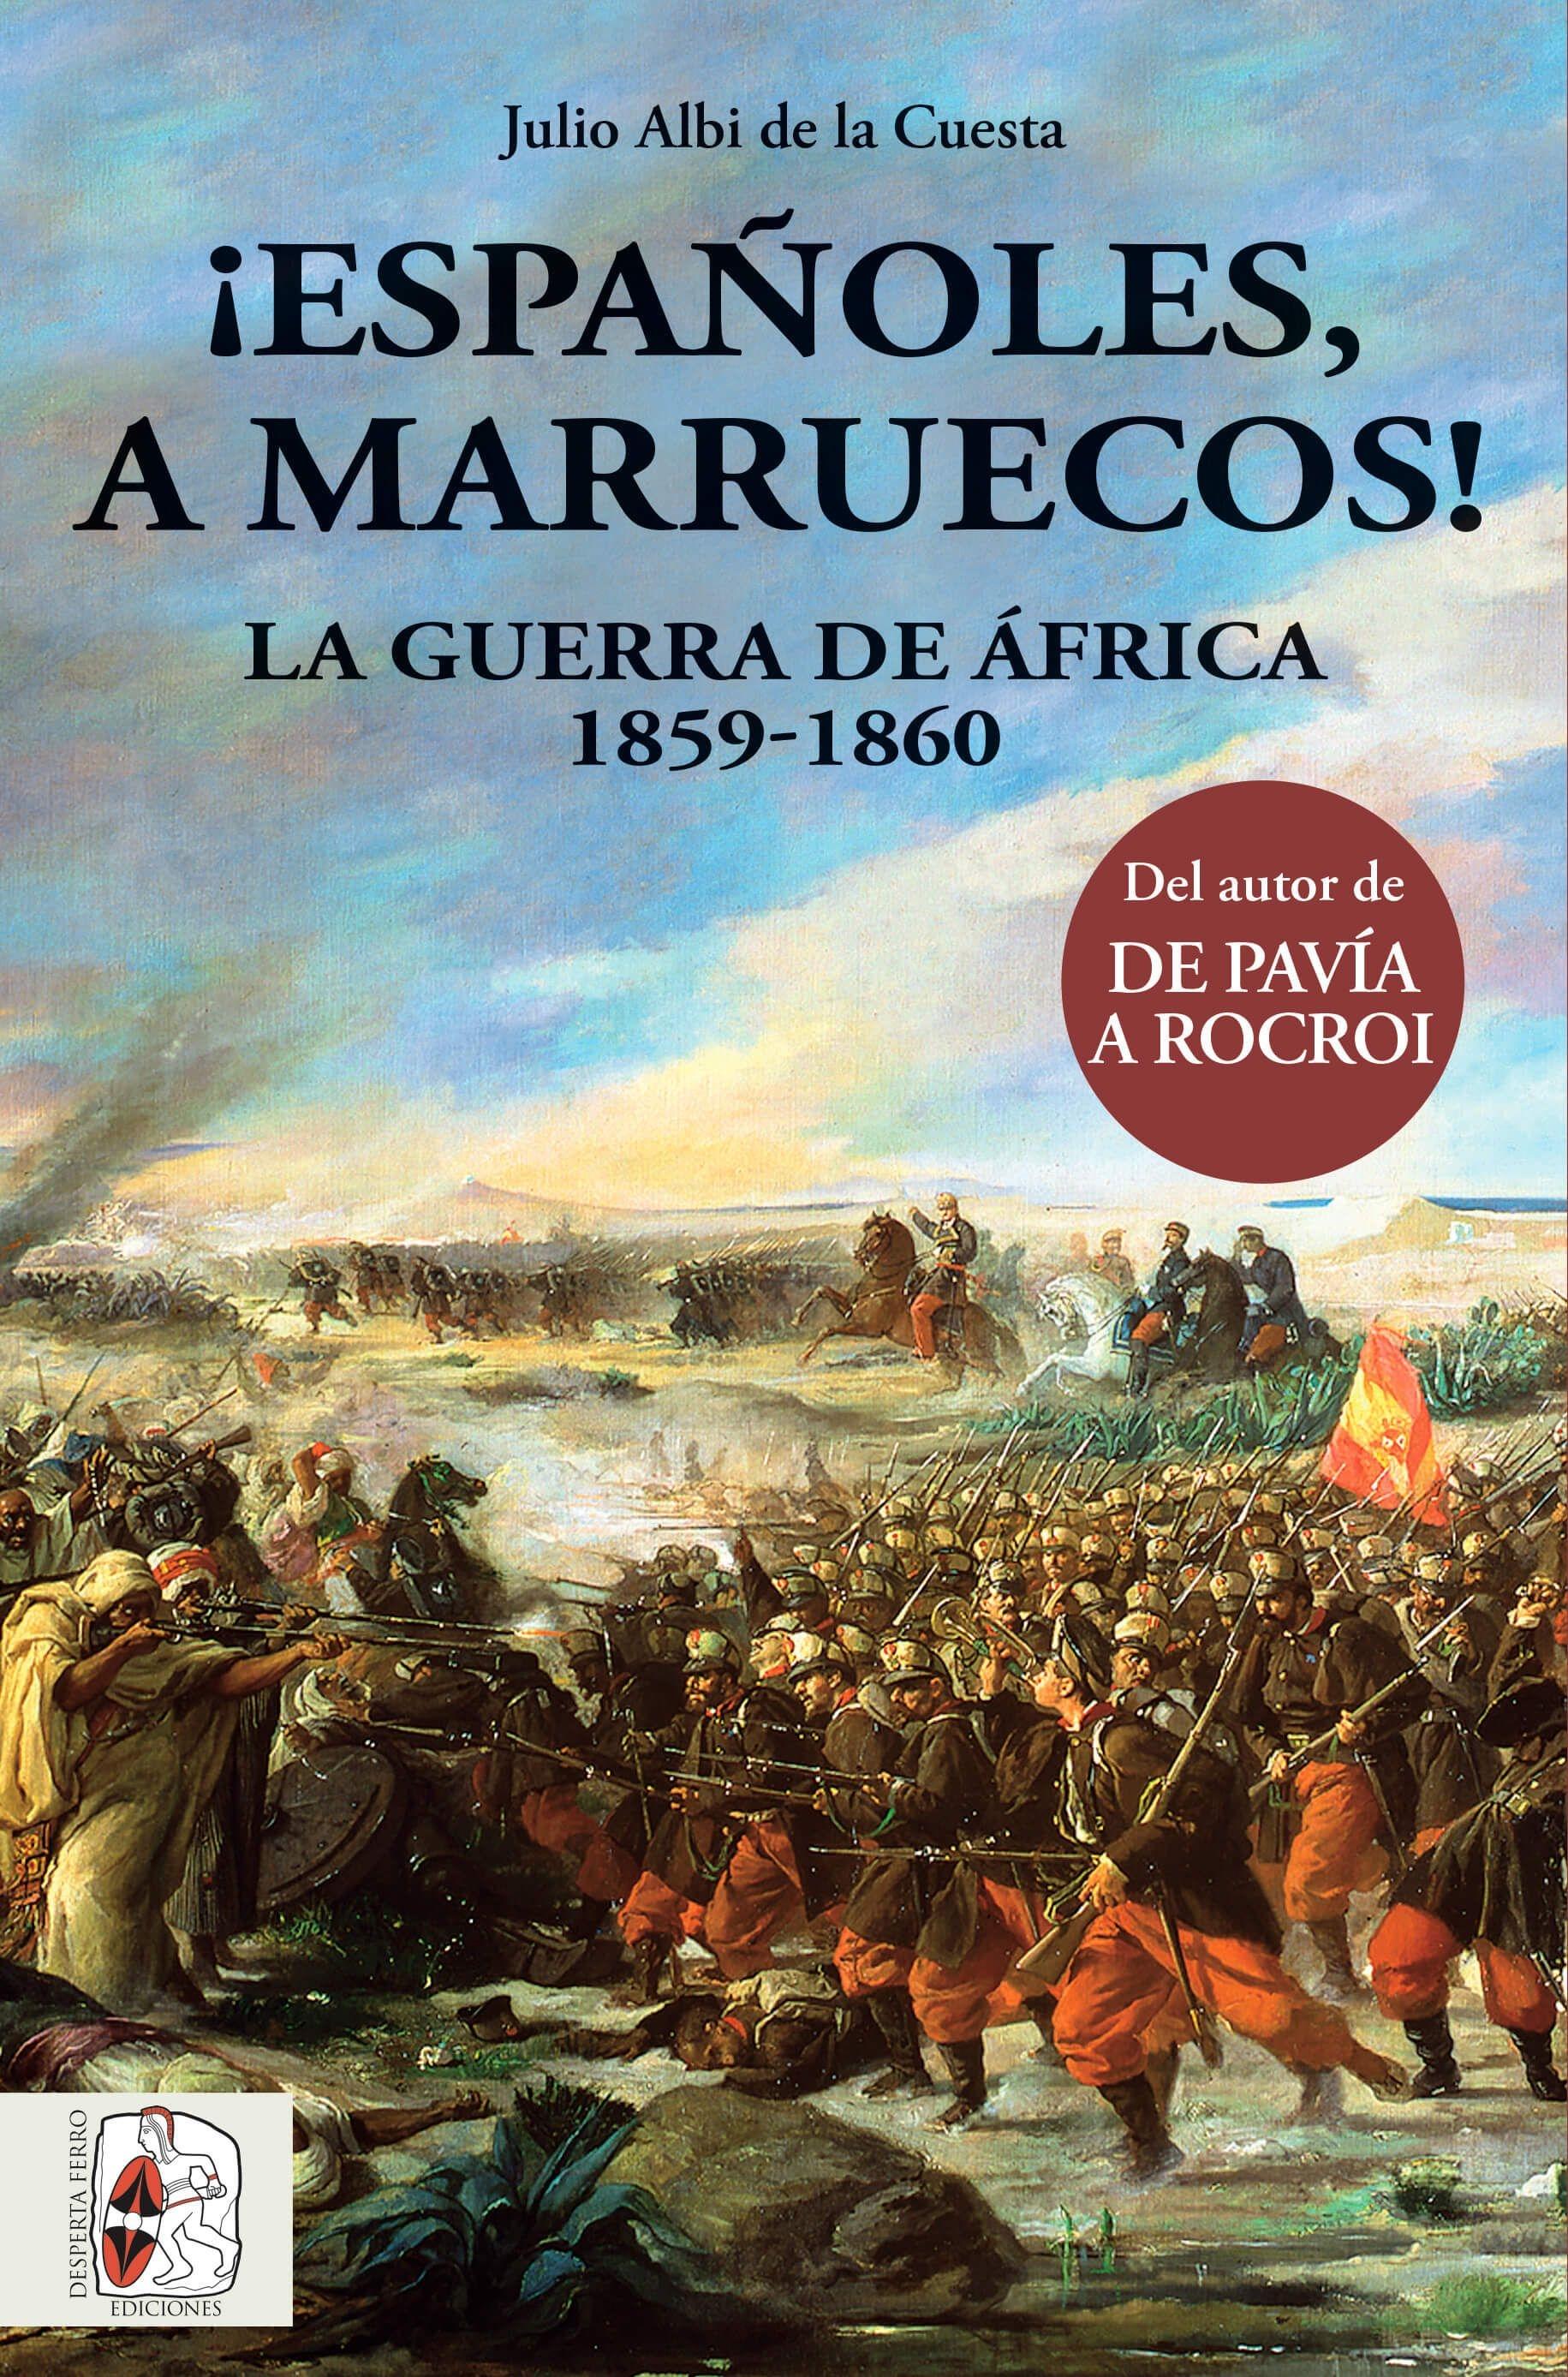 ¡Españoles a Marruecos! "La guerra de África 1859-1860"